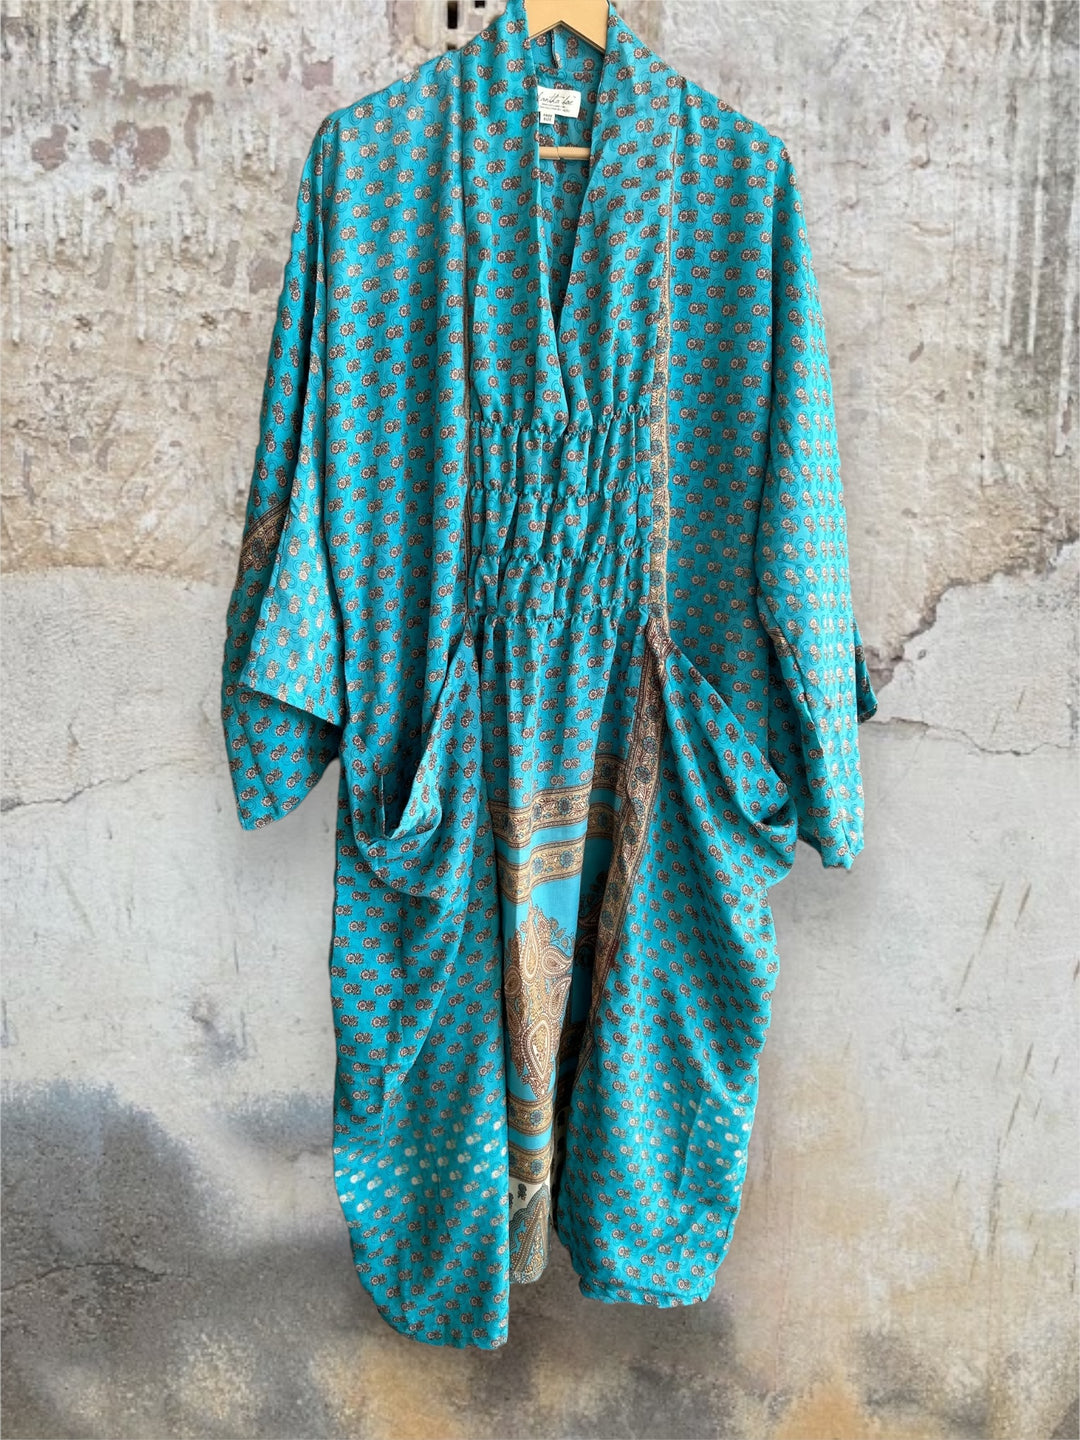 Ruched Dress 0424 059 - Kantha Bae